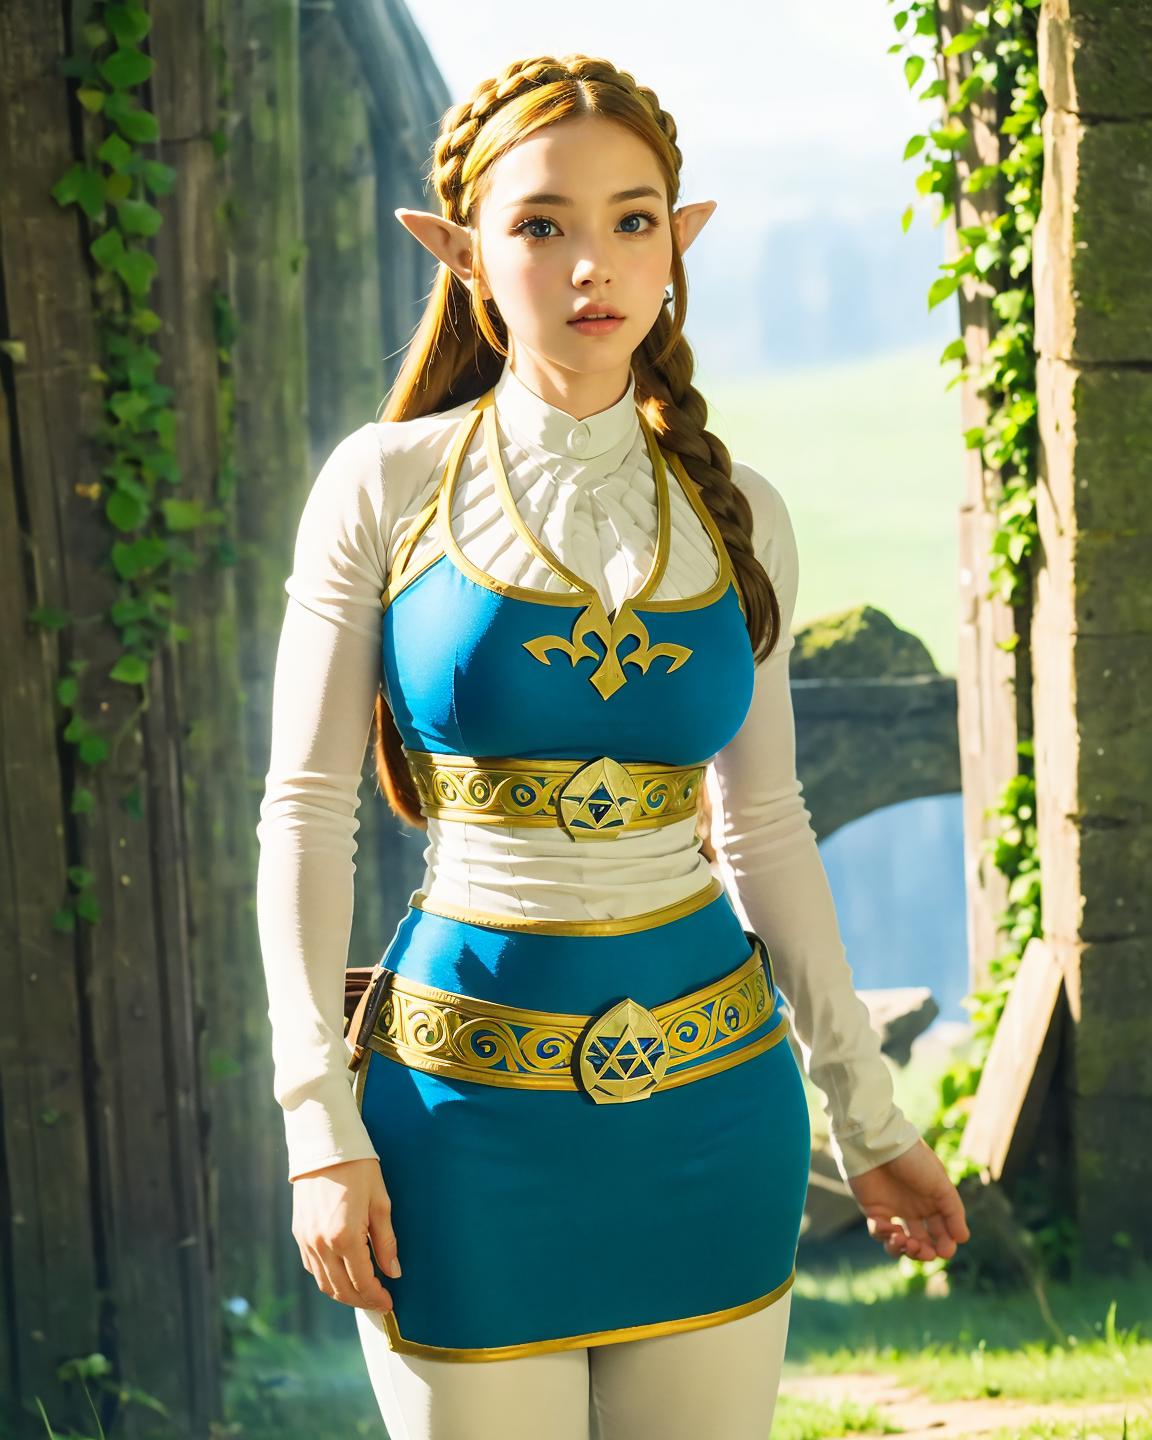 The Legend of Zelda - Princess Zelda image by MrHong